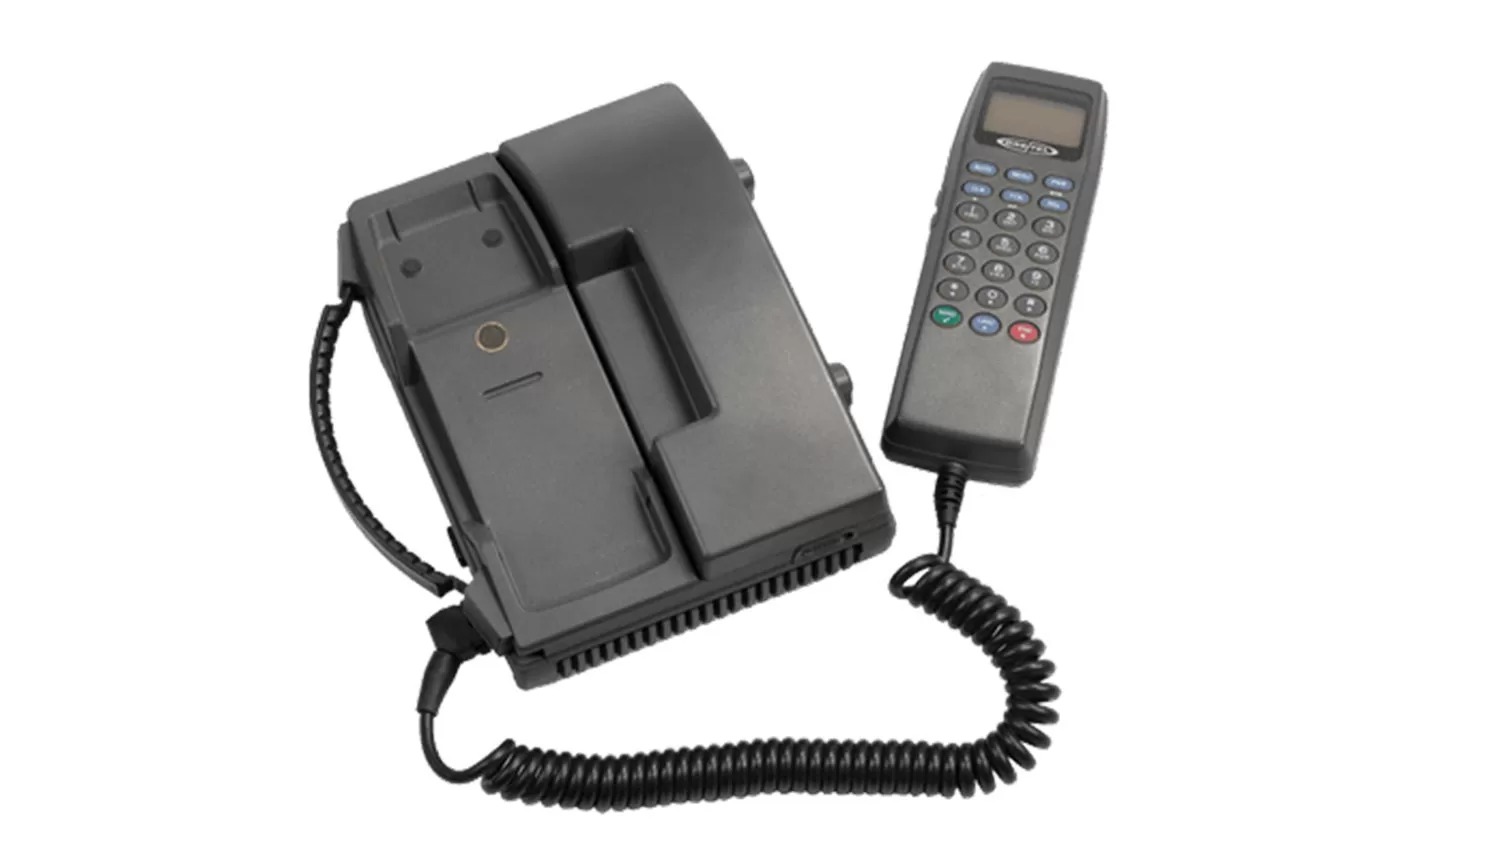 El teléfono portátil Orbitel 901 fue el primero en recibir un mensaje SMS en 1992